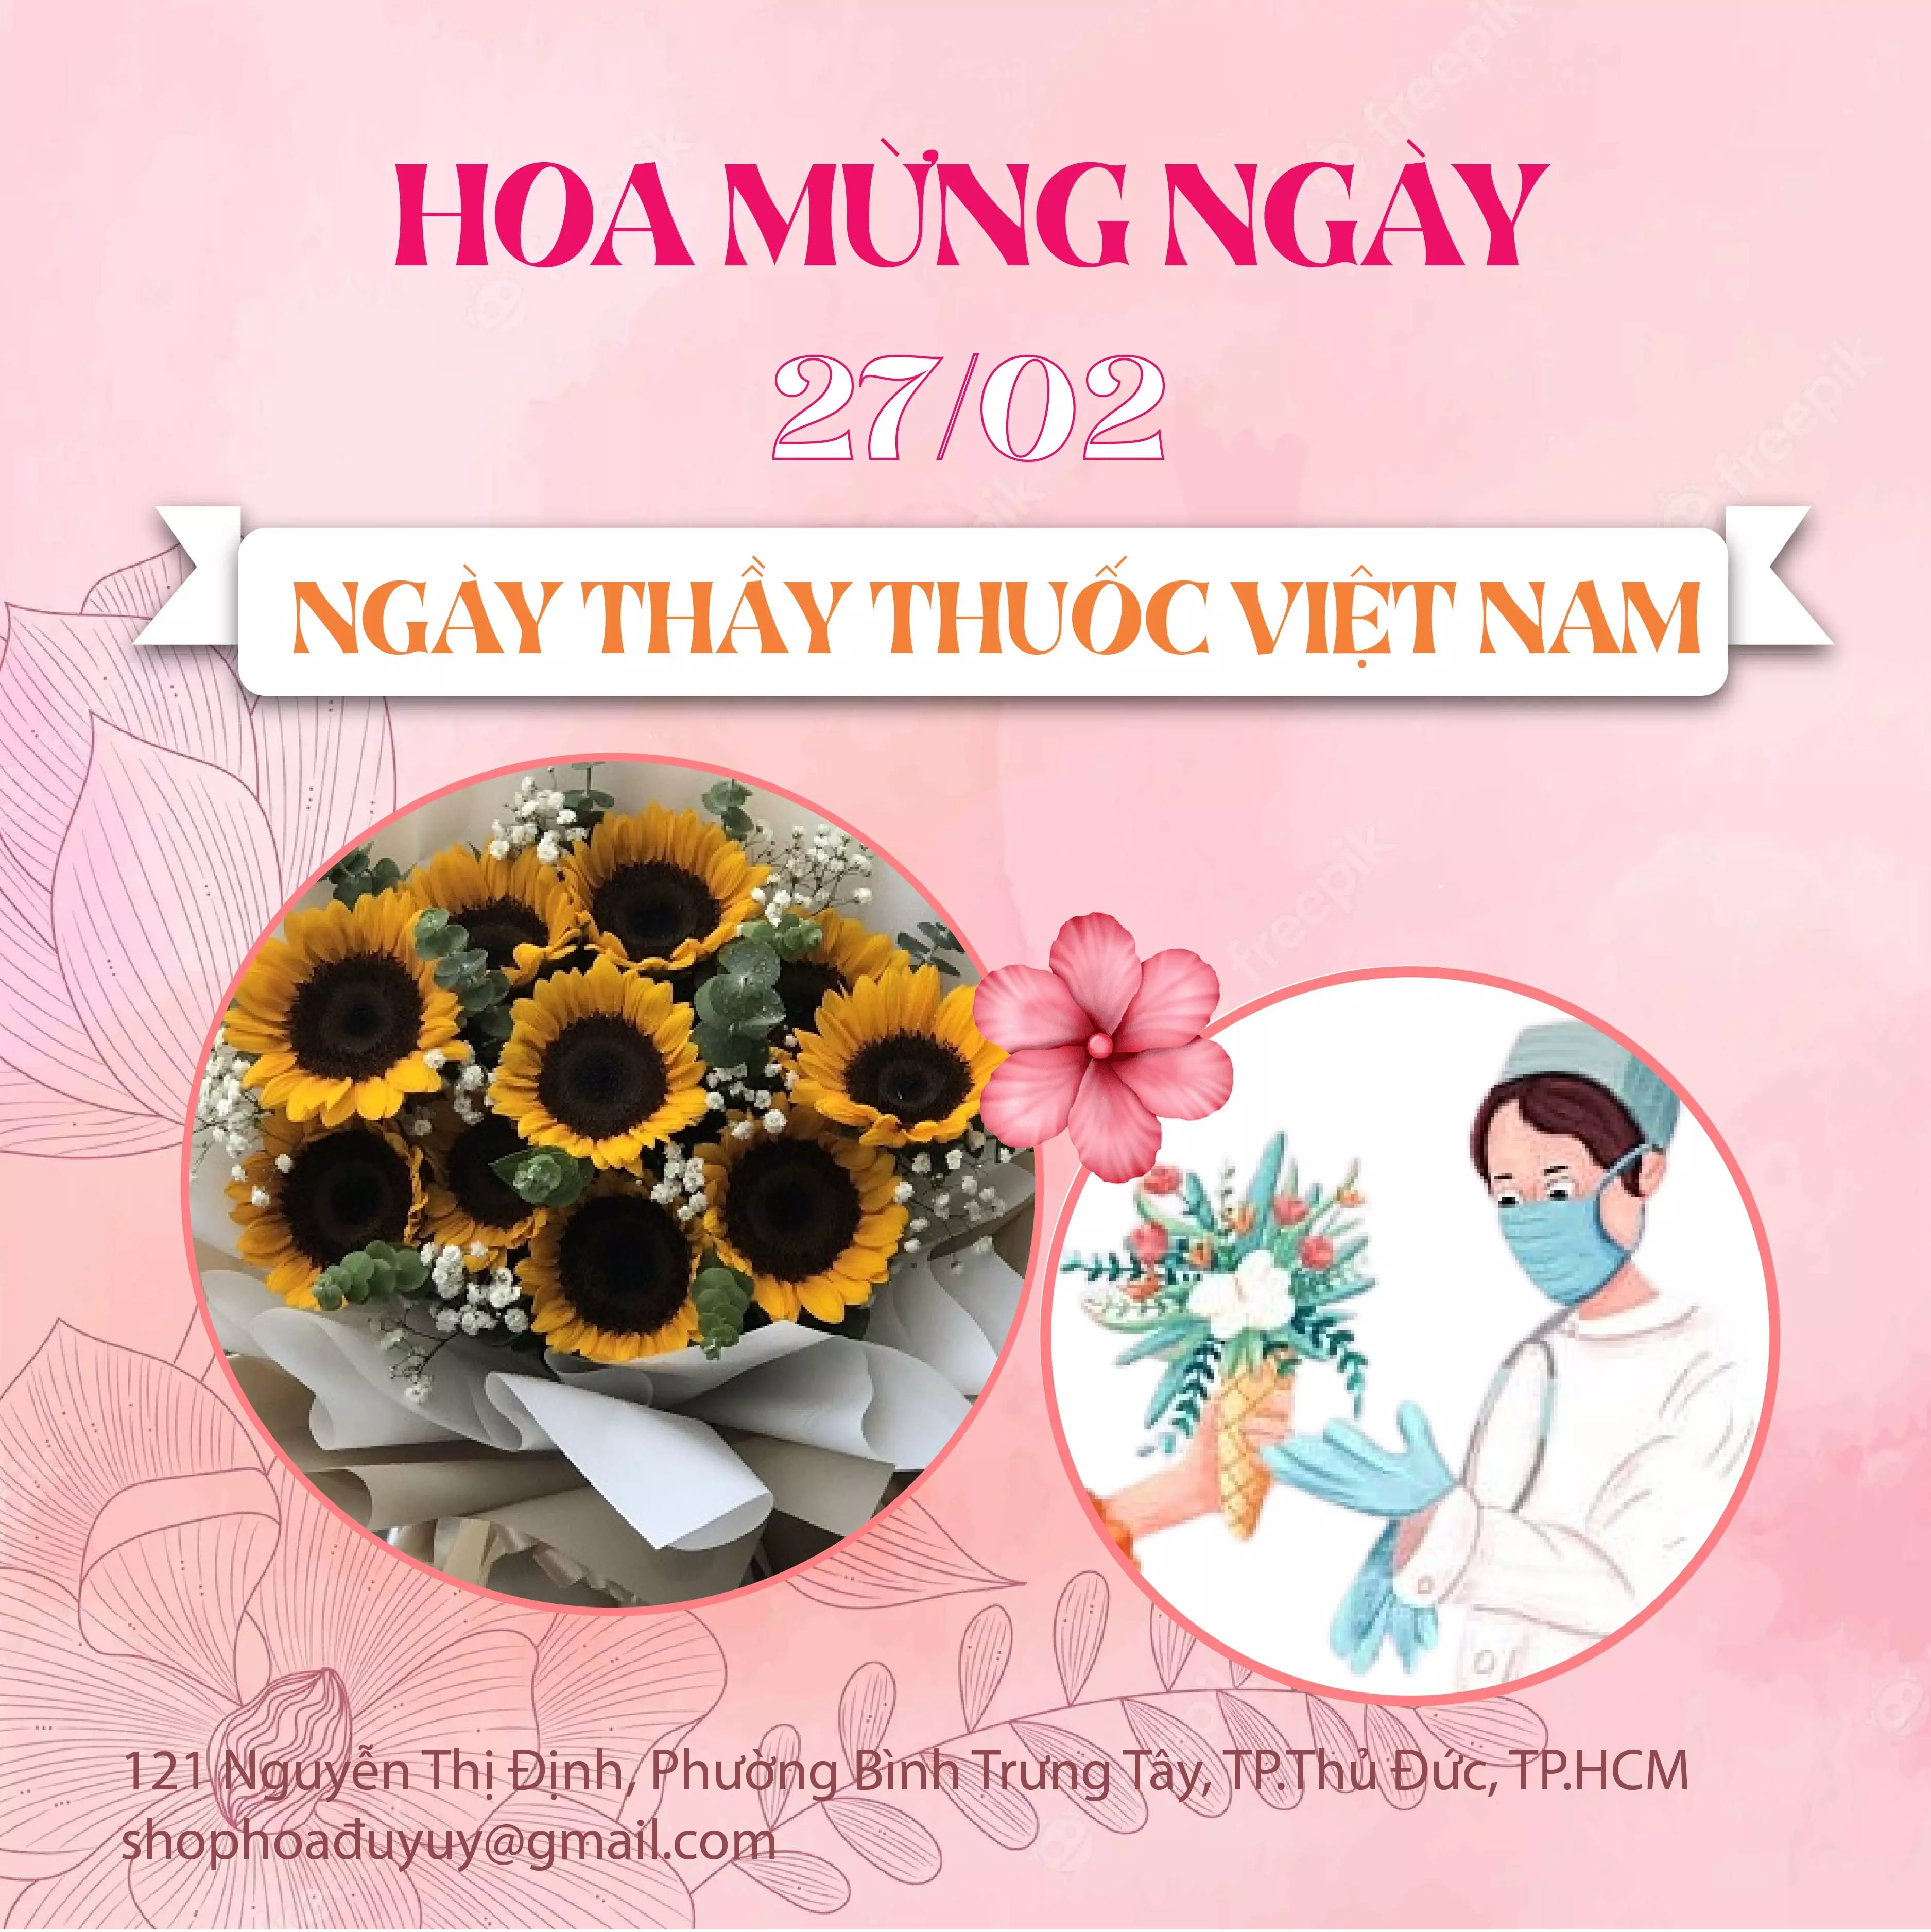 Hoa Mừng Ngày 27/02 - Ngày Thầy Thuốc Việt Nam